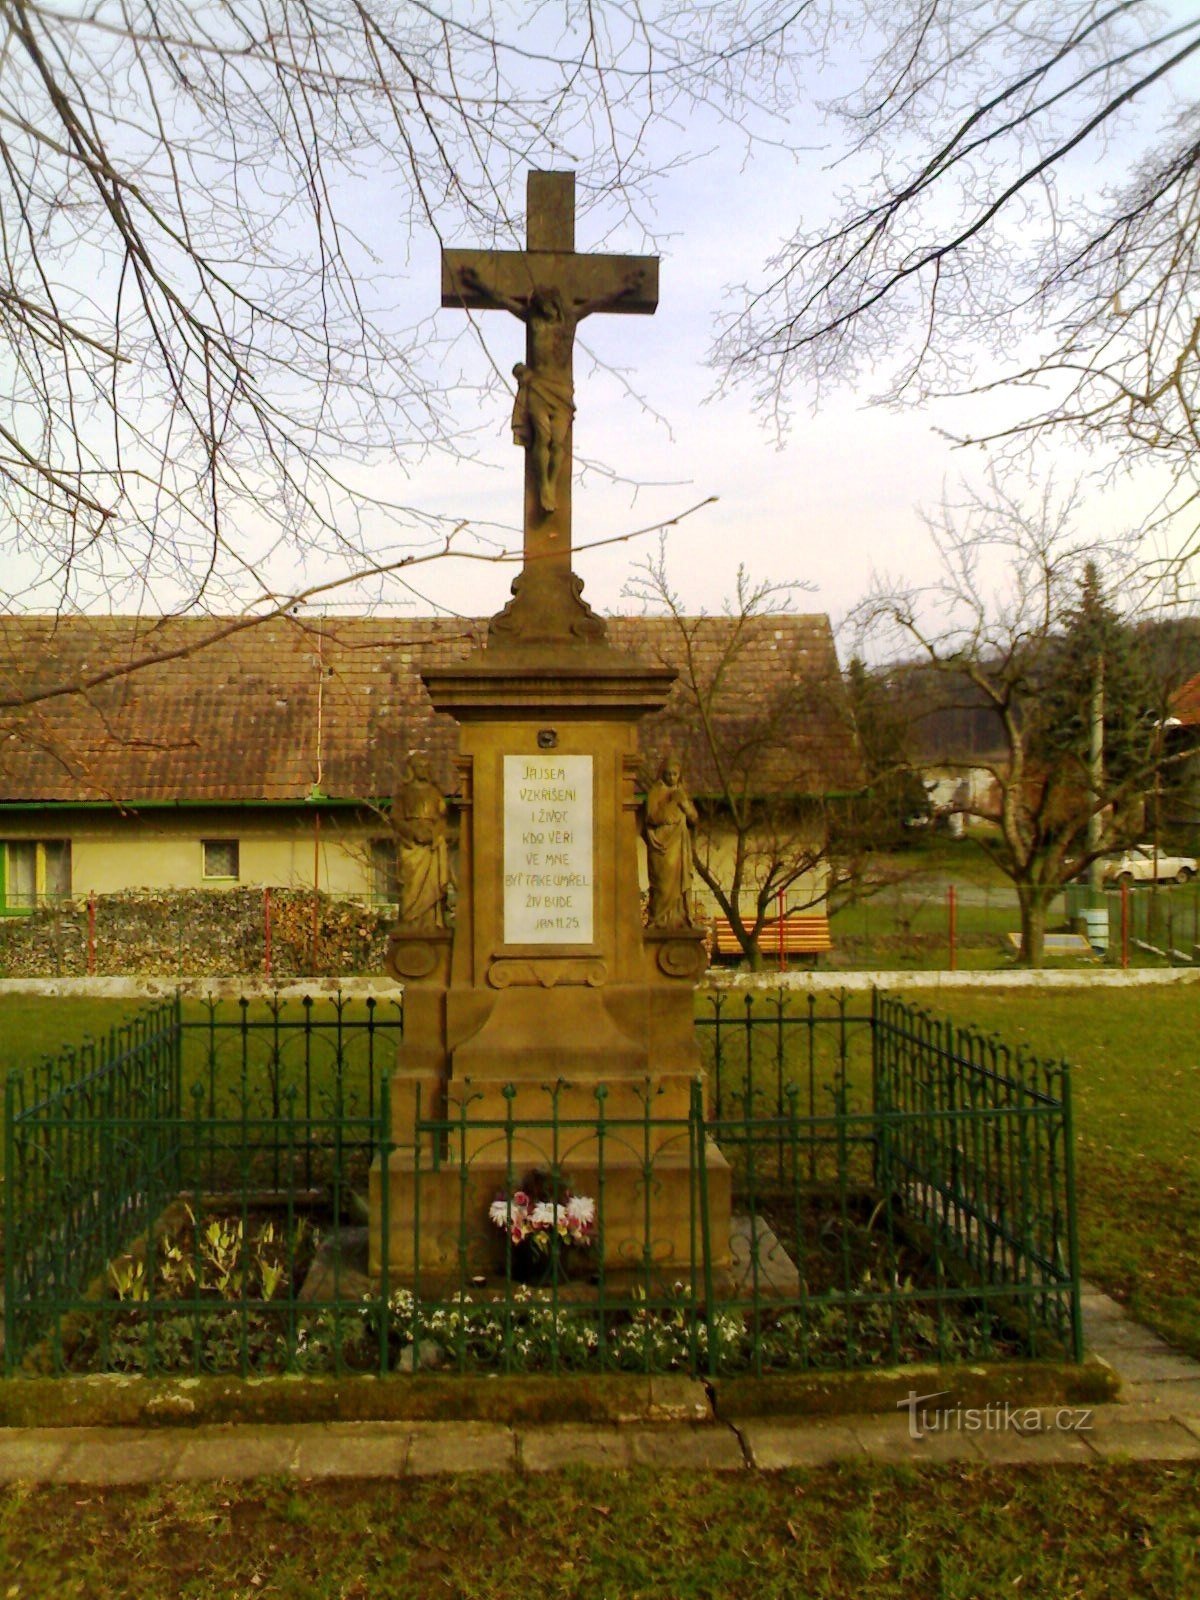 Libníkovice - keresztre feszített emlékmű harangtoronnyal